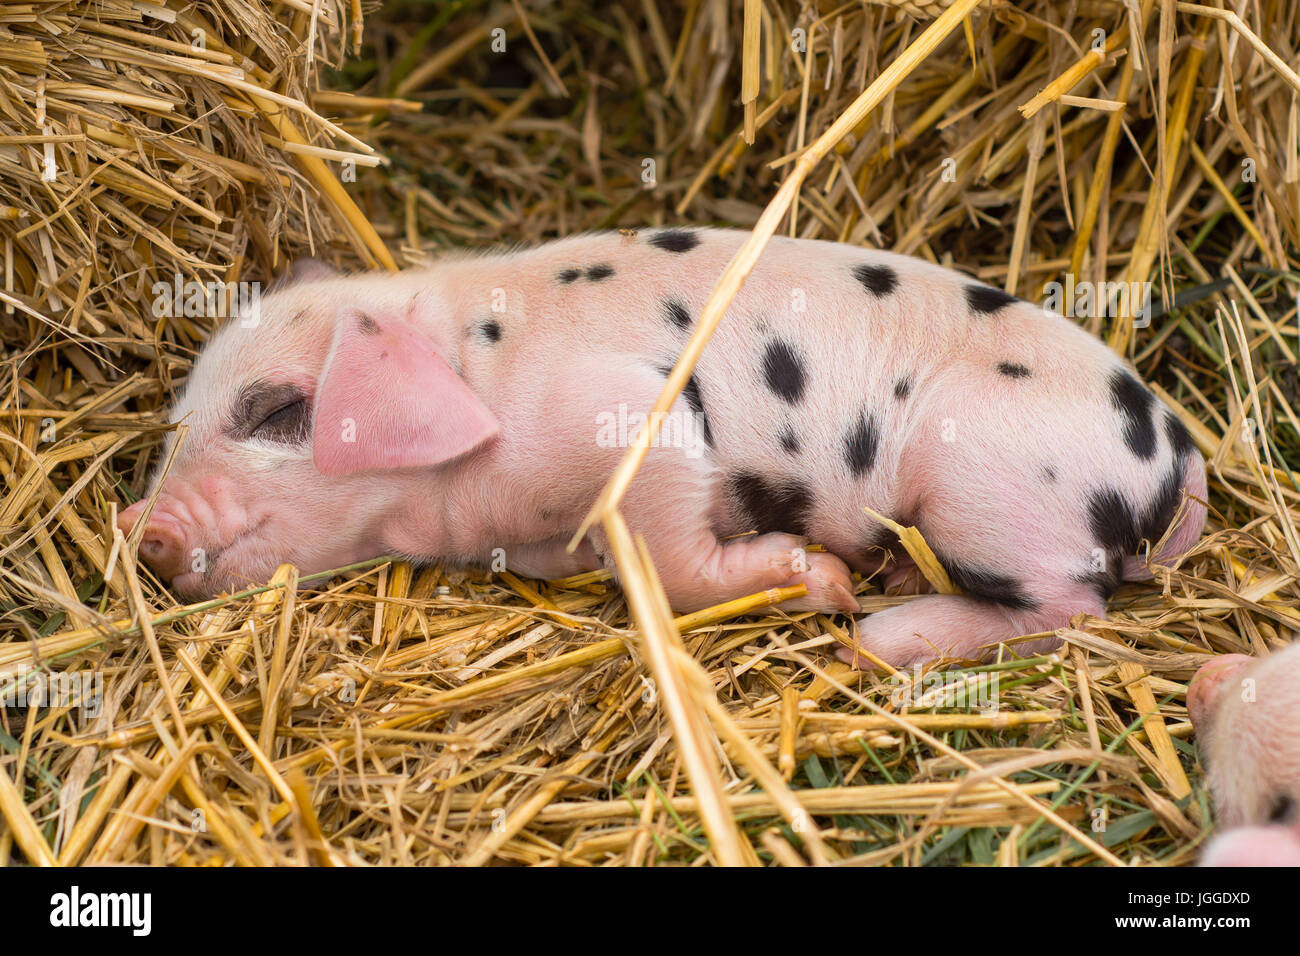 oxford-sandy-und-schwarzen-ferkel-eingeschlafen-vier-tage-alten-hausschweine-im-freien-mit-schwarzen-flecken-auf-rosa-haut-jggdxd.jpg